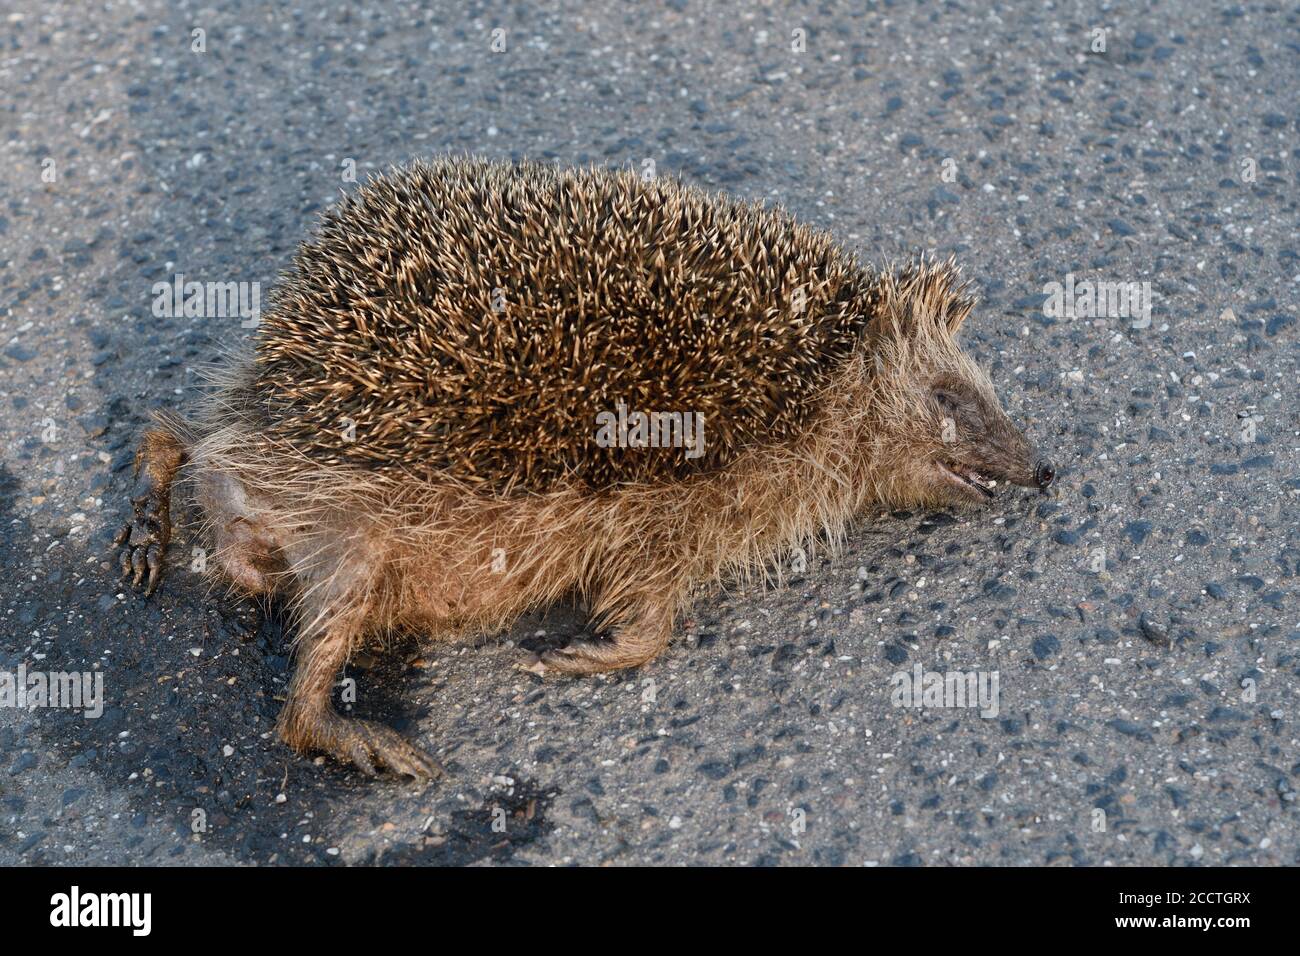 Hedgehog ( Erinaceus europaeus ), morto, schiacciato sulla strada, uccisione stradale, in pericolo, percorso dal traffico stradale, fauna selvatica, Europa. Foto Stock